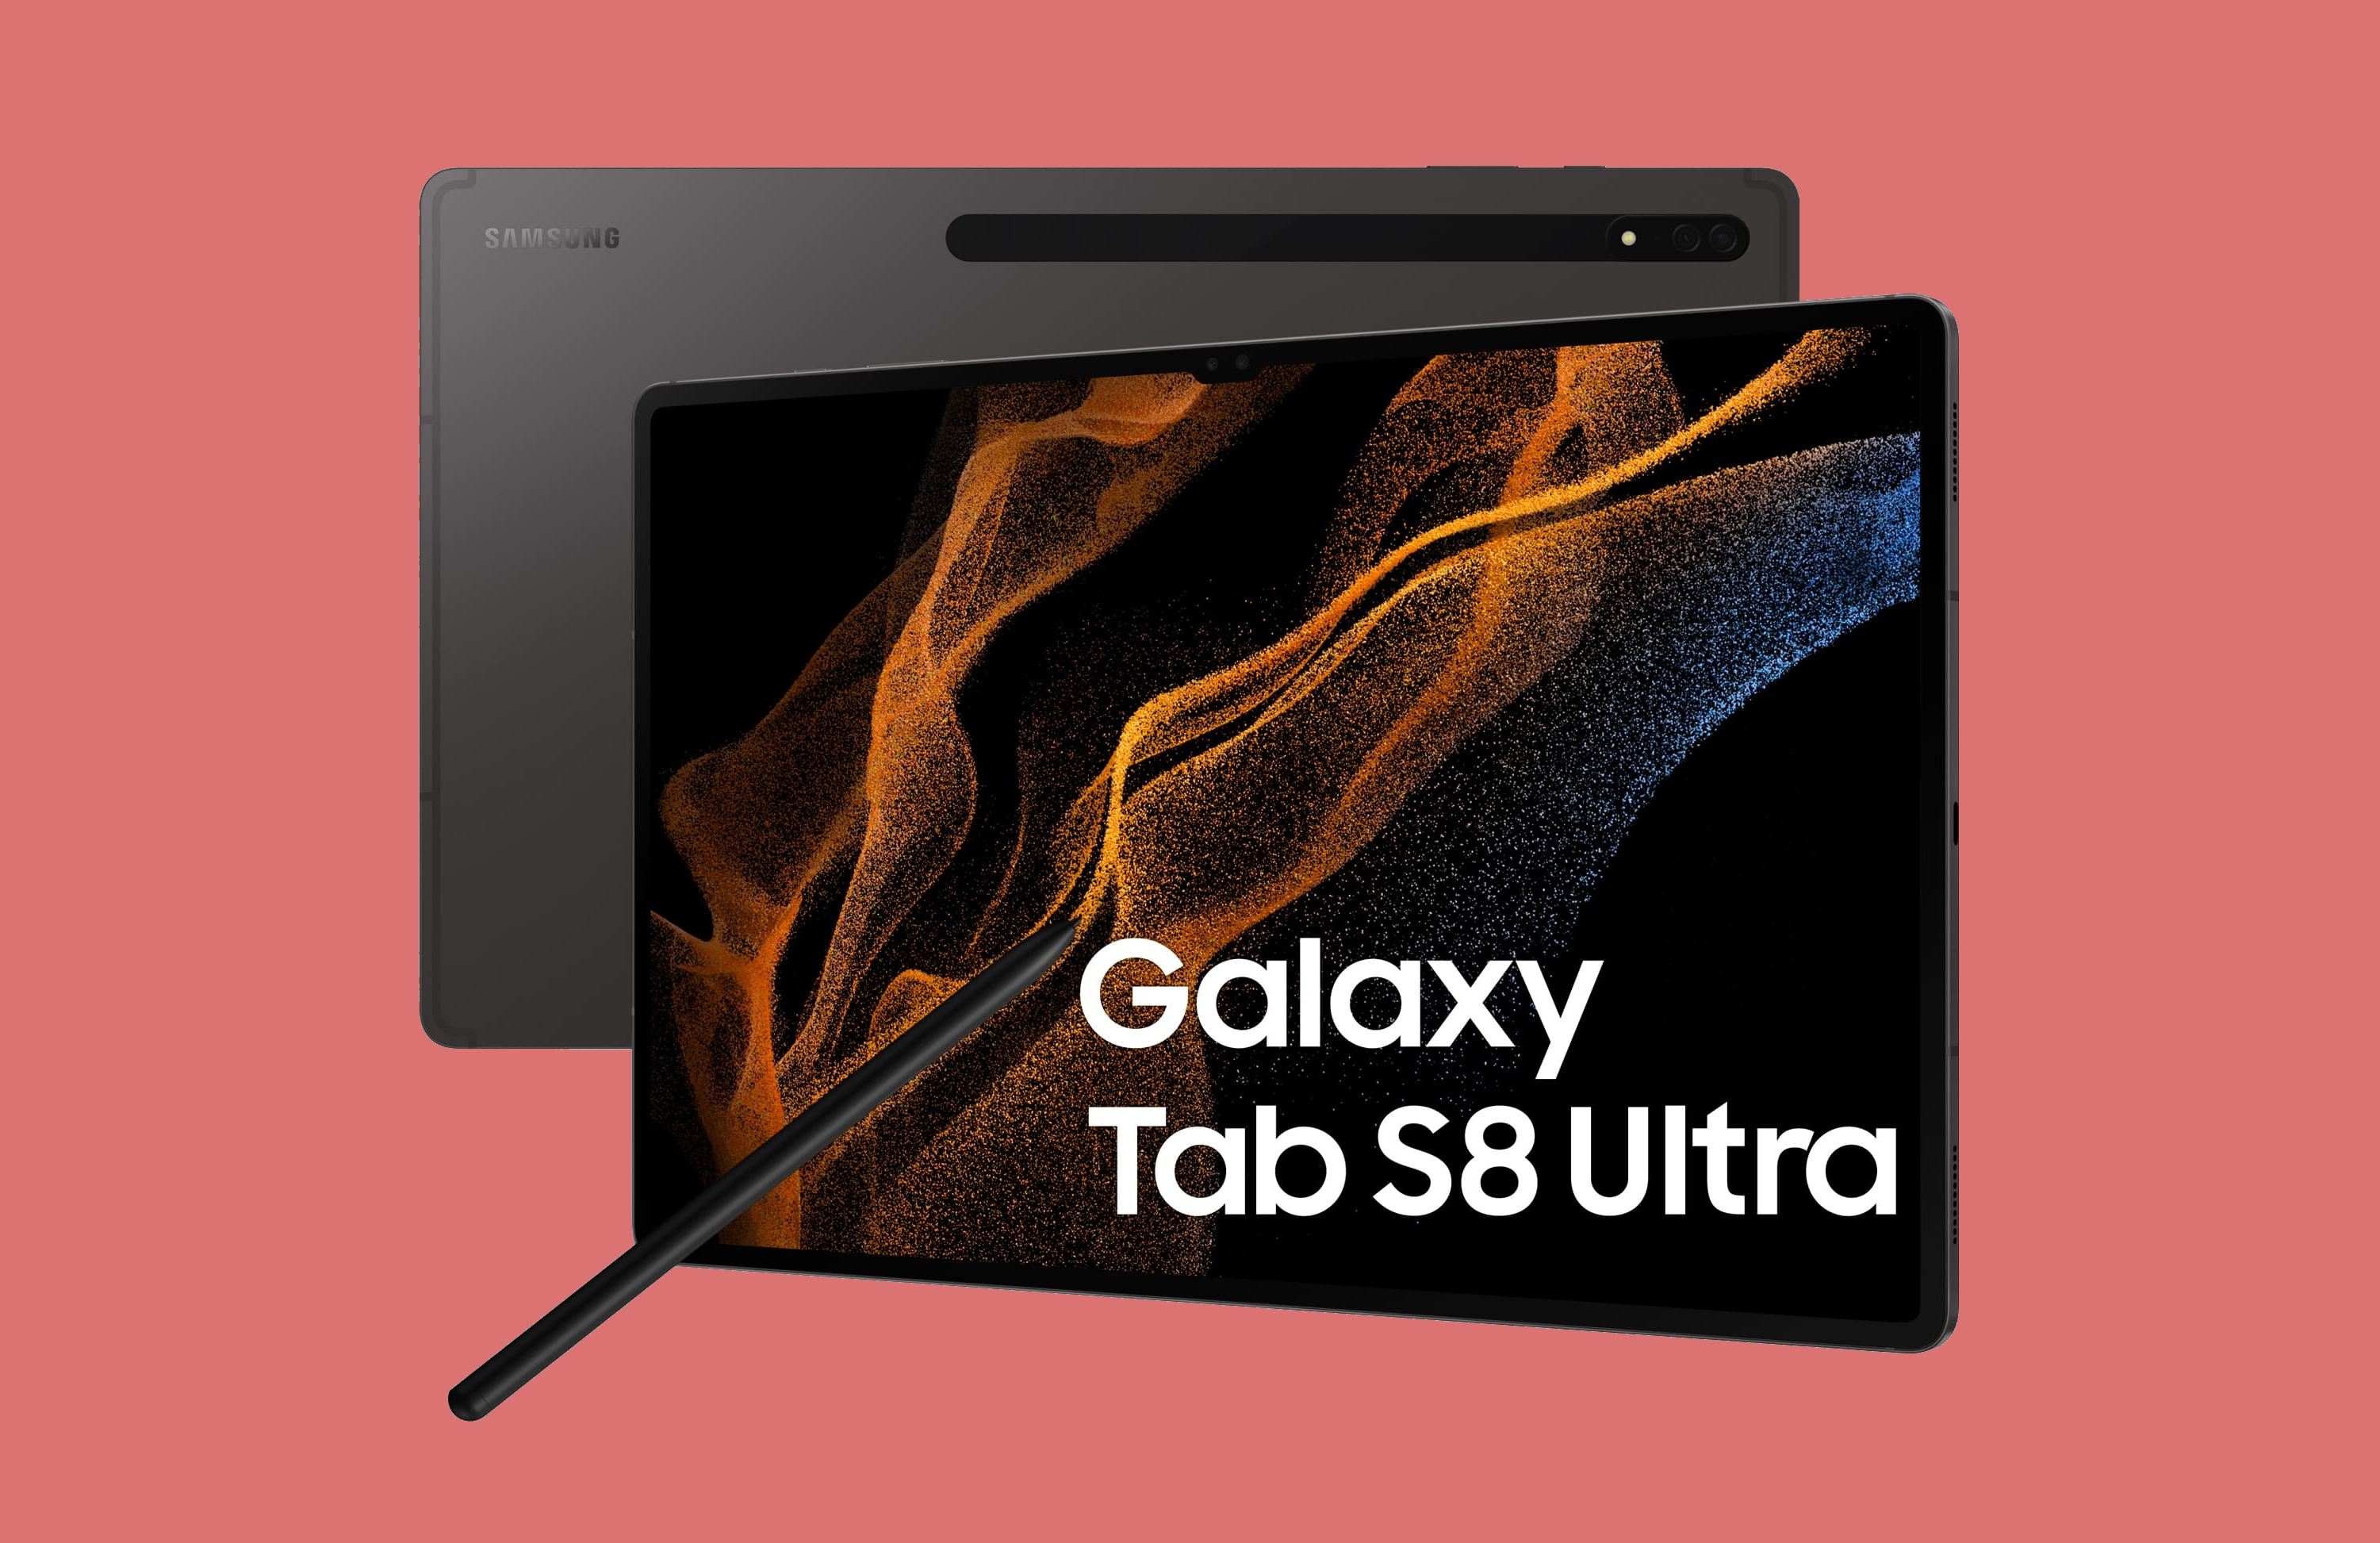 Samsung Galaxy Tab S8 Ultra mit 14,6"-Bildschirm und Snapdragon 8 Gen 1-Chip bei Amazon mit $261 Rabatt erhältlich